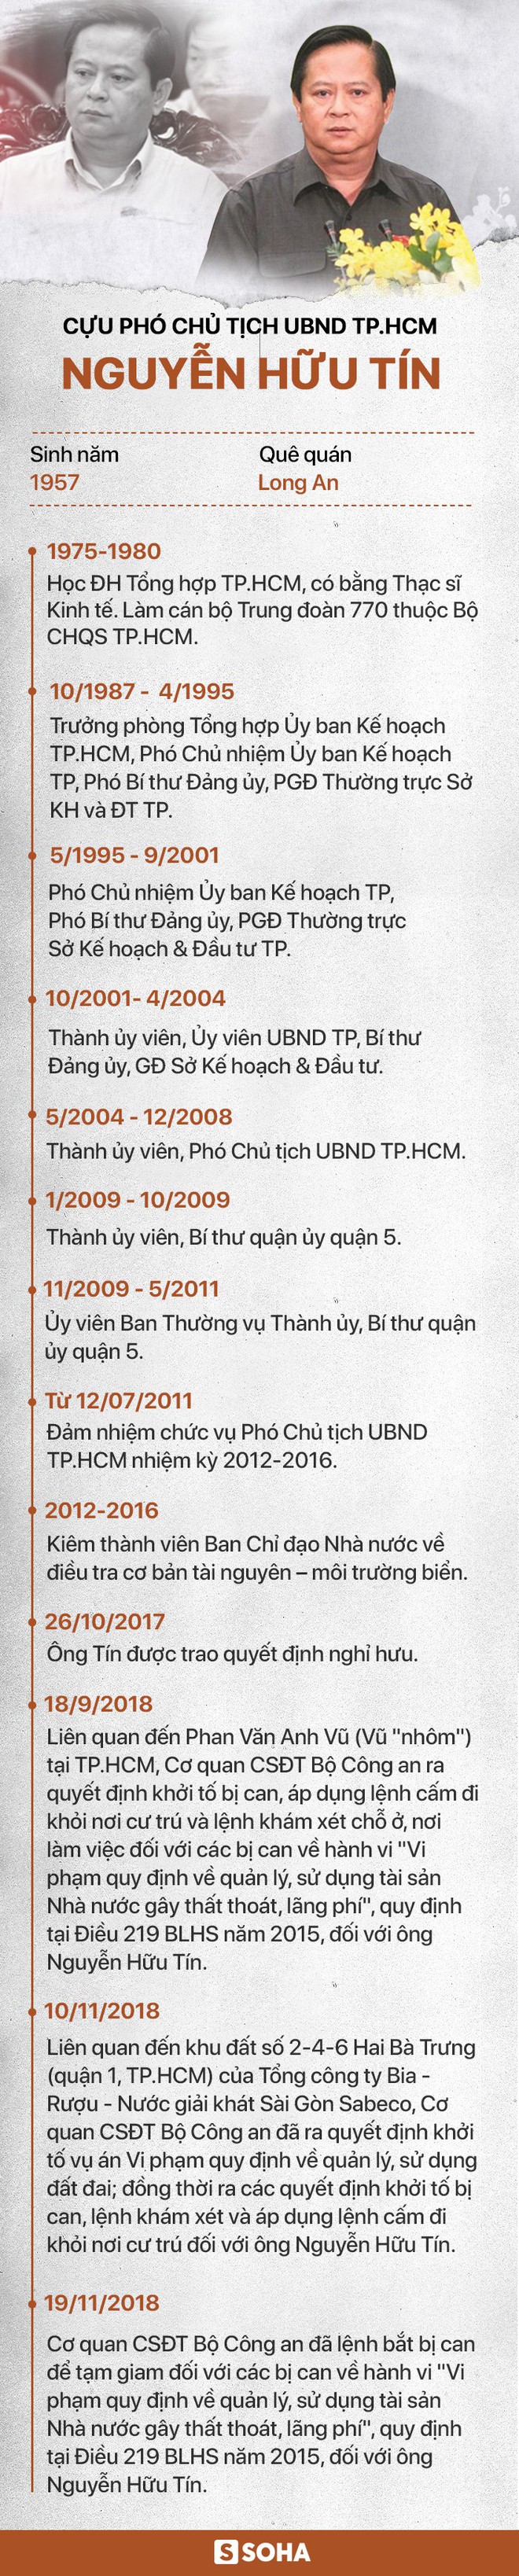 Chân dung cựu Phó Chủ tịch UBND TP.HCM Nguyễn Hữu Tín vừa bị bắt tạm giam - Ảnh 1.